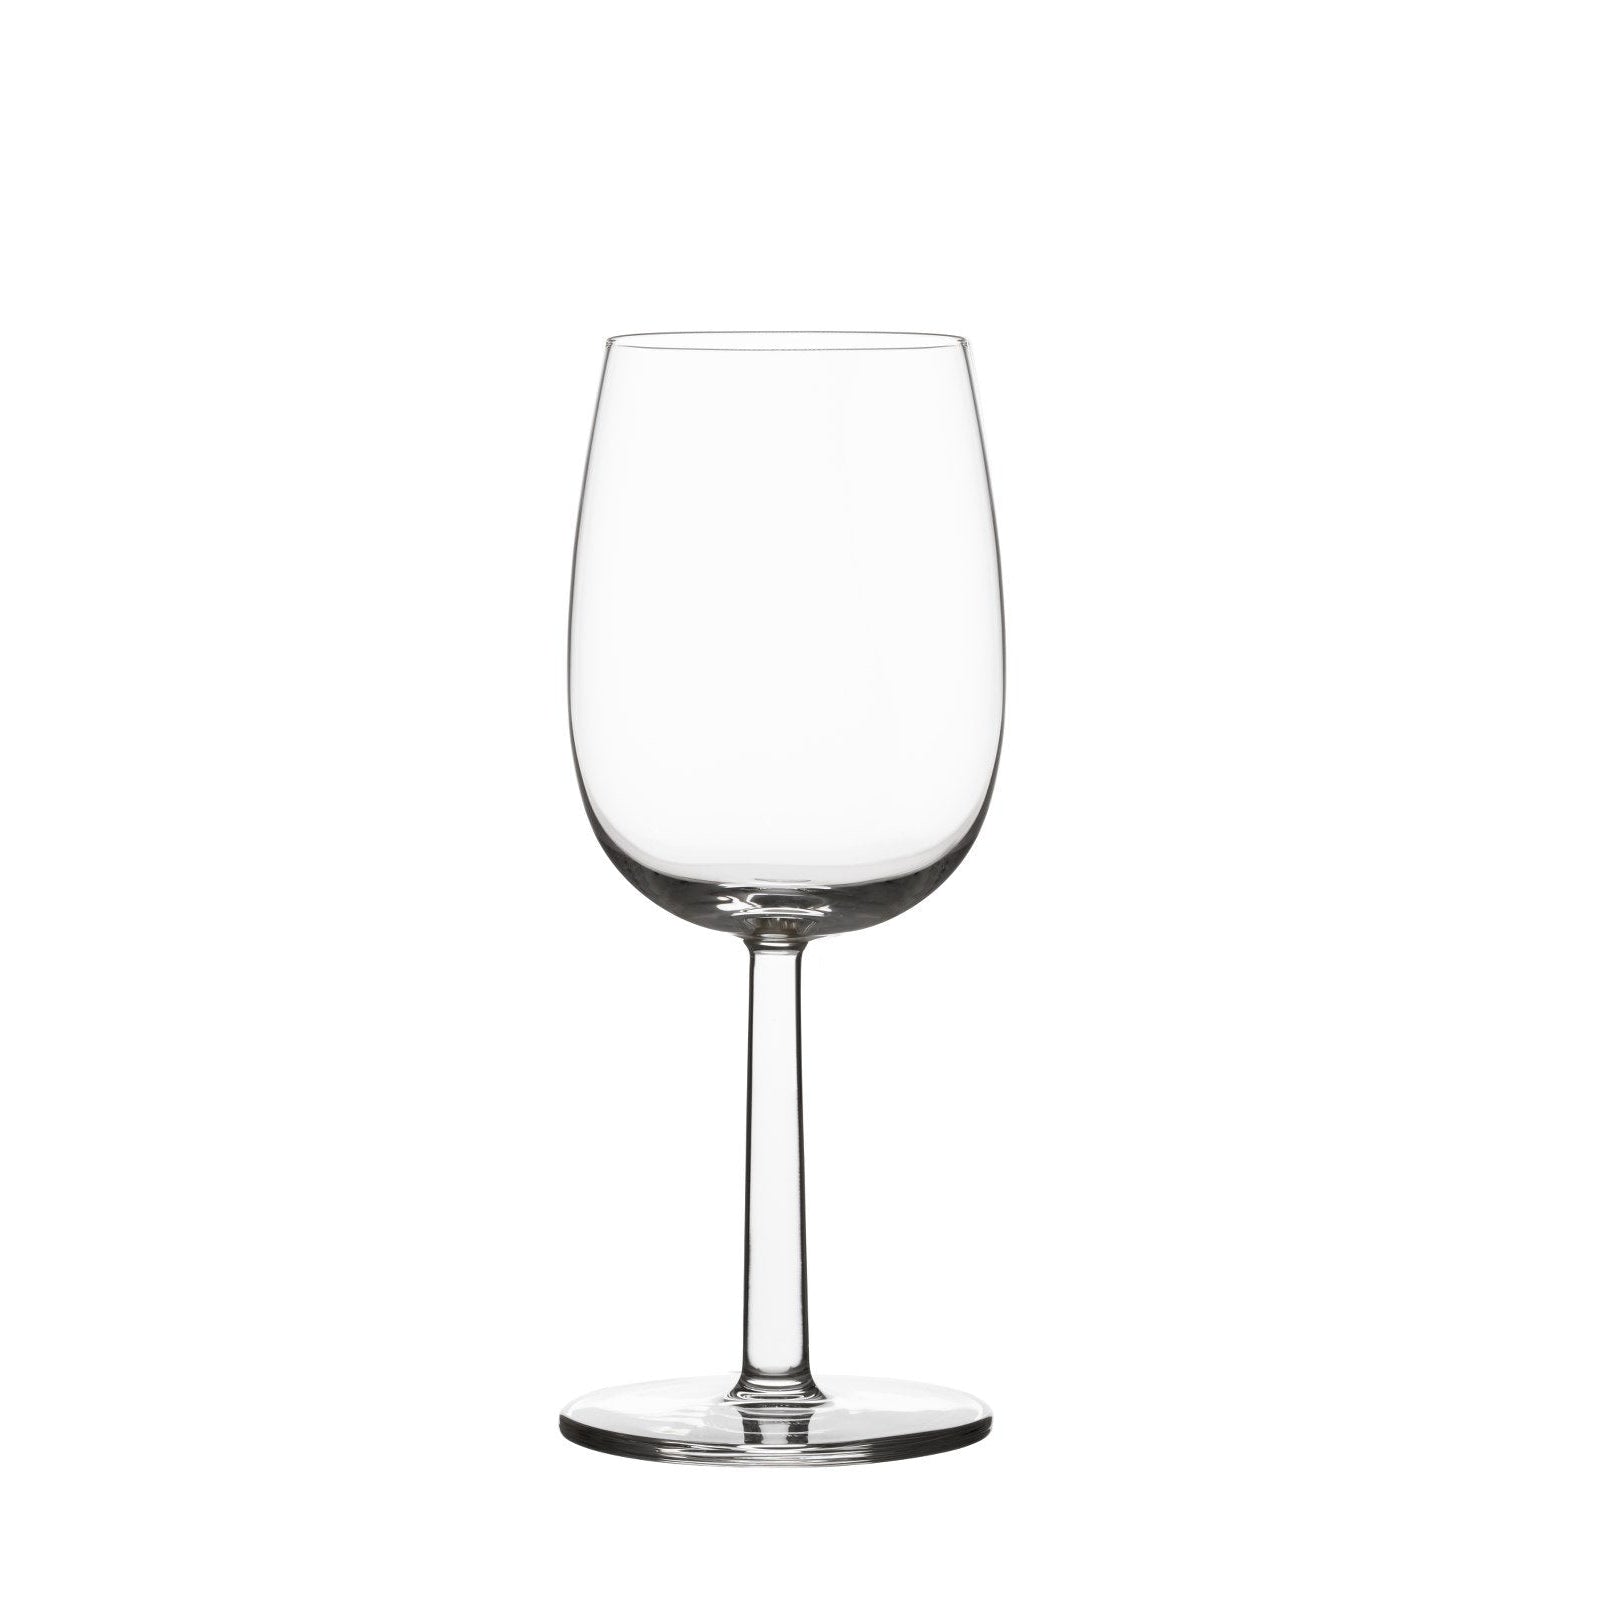 Iittala Raami witte wijnglazen Clear 2pcs, 28cl